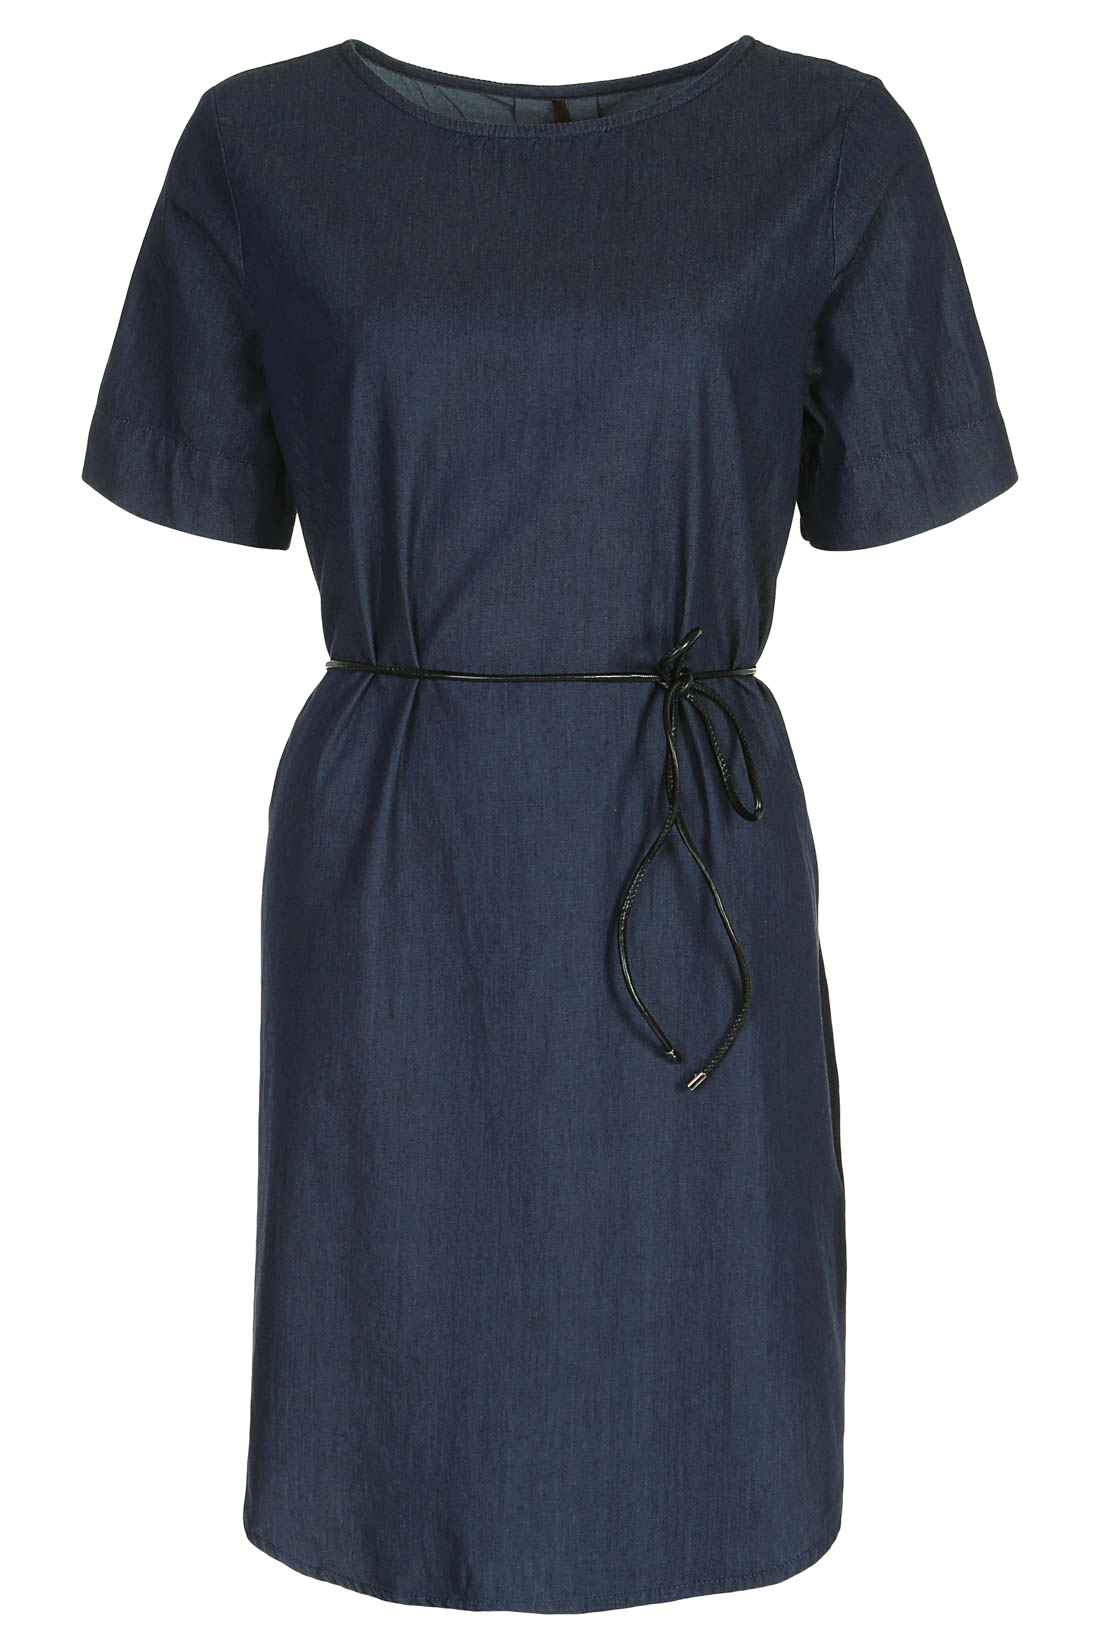 Платье из денима-шамбри (арт. baon B457027), размер XXL, цвет navy denim#синий Платье из денима-шамбри (арт. baon B457027) - фото 4